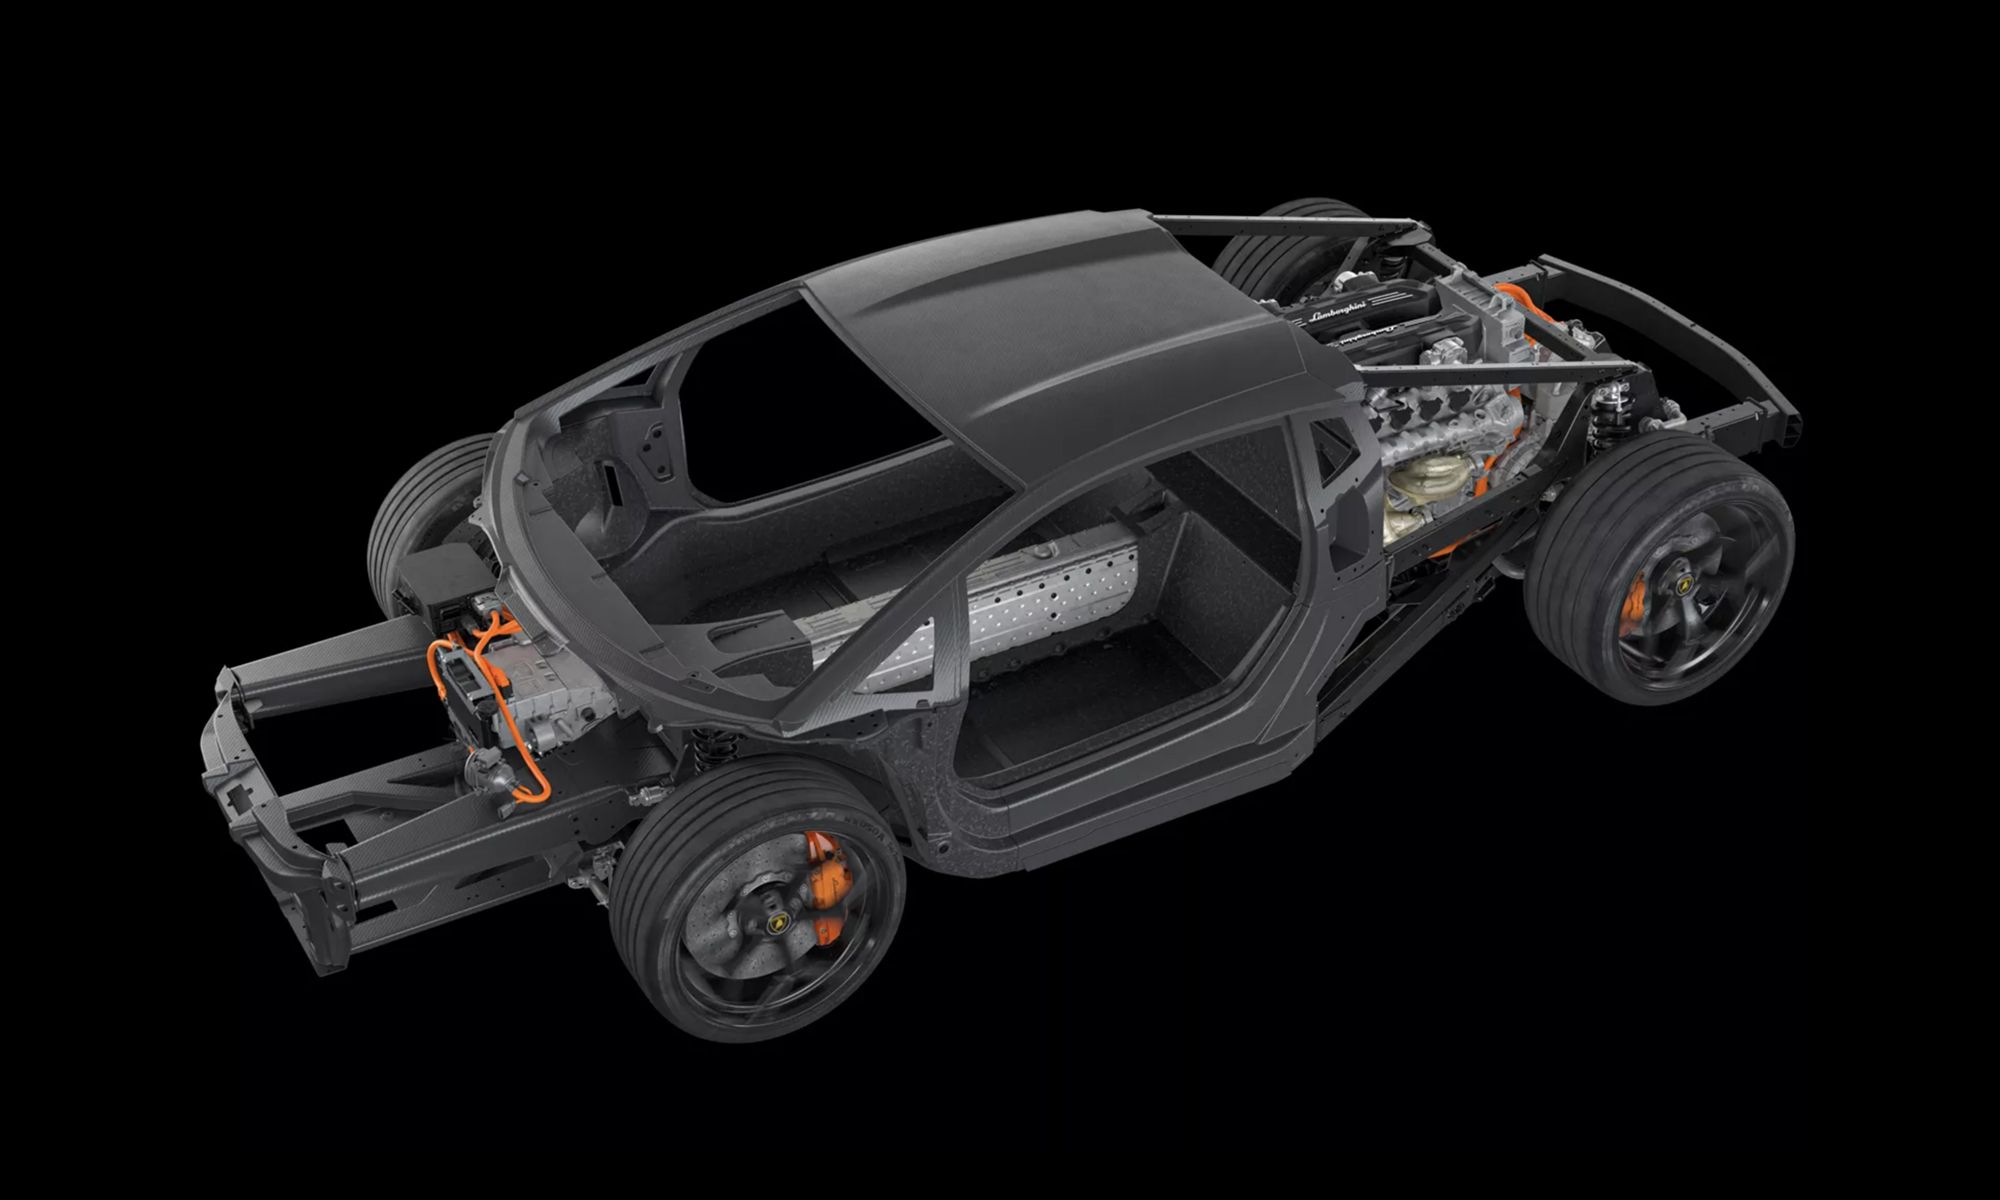 El sustituto del Lamborghini Aventador superará los 1.000 CV de potencia gracias a su mecánica electrificada.